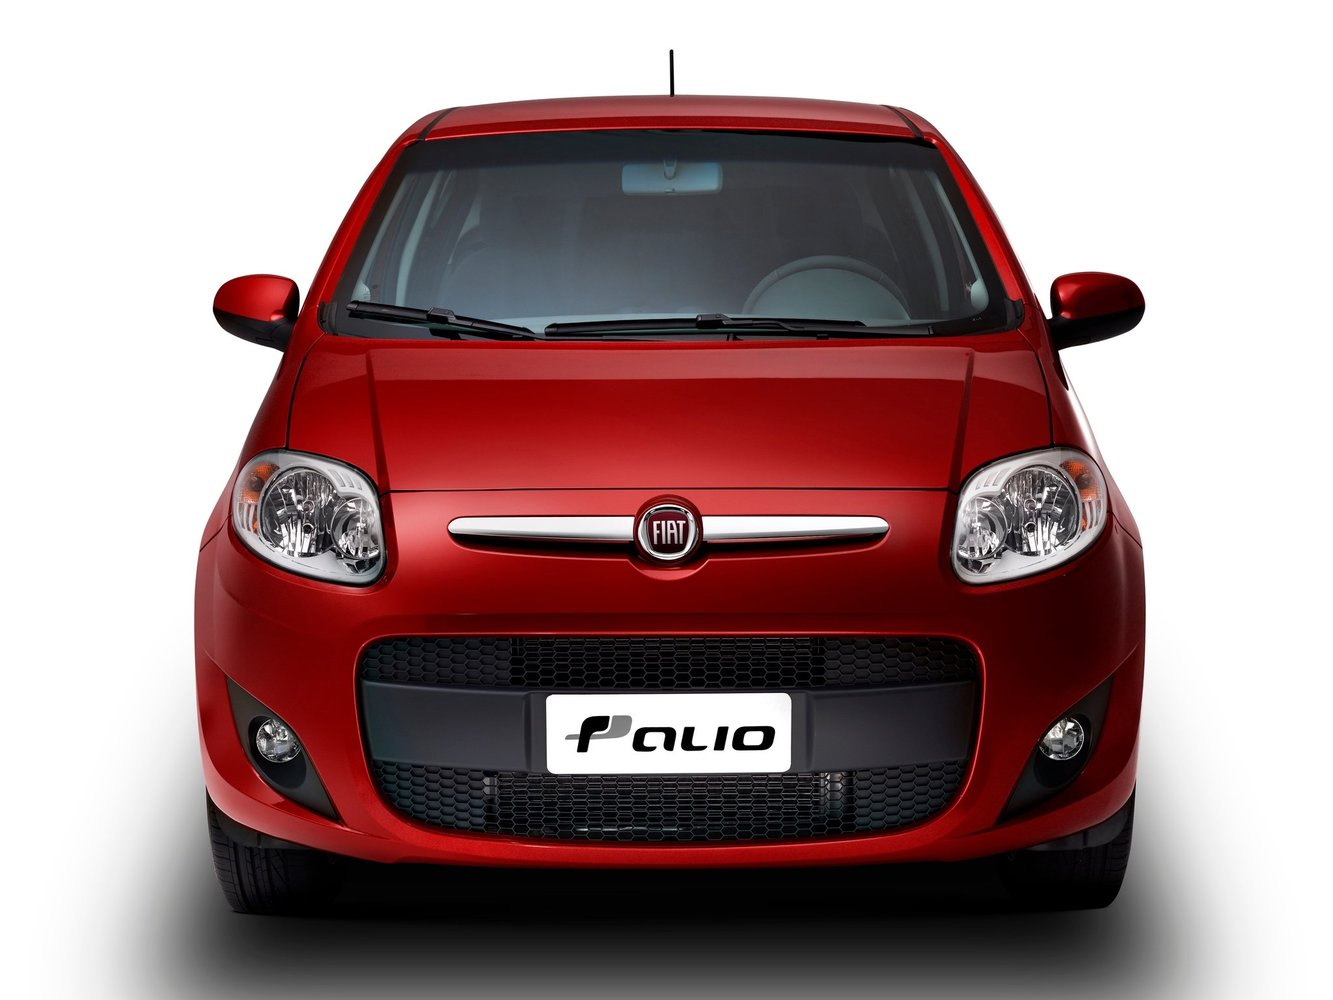 хэтчбек 5 дв. Fiat Palio 2008 - 2016г выпуска модификация 1.0 MT (73 л.с.)